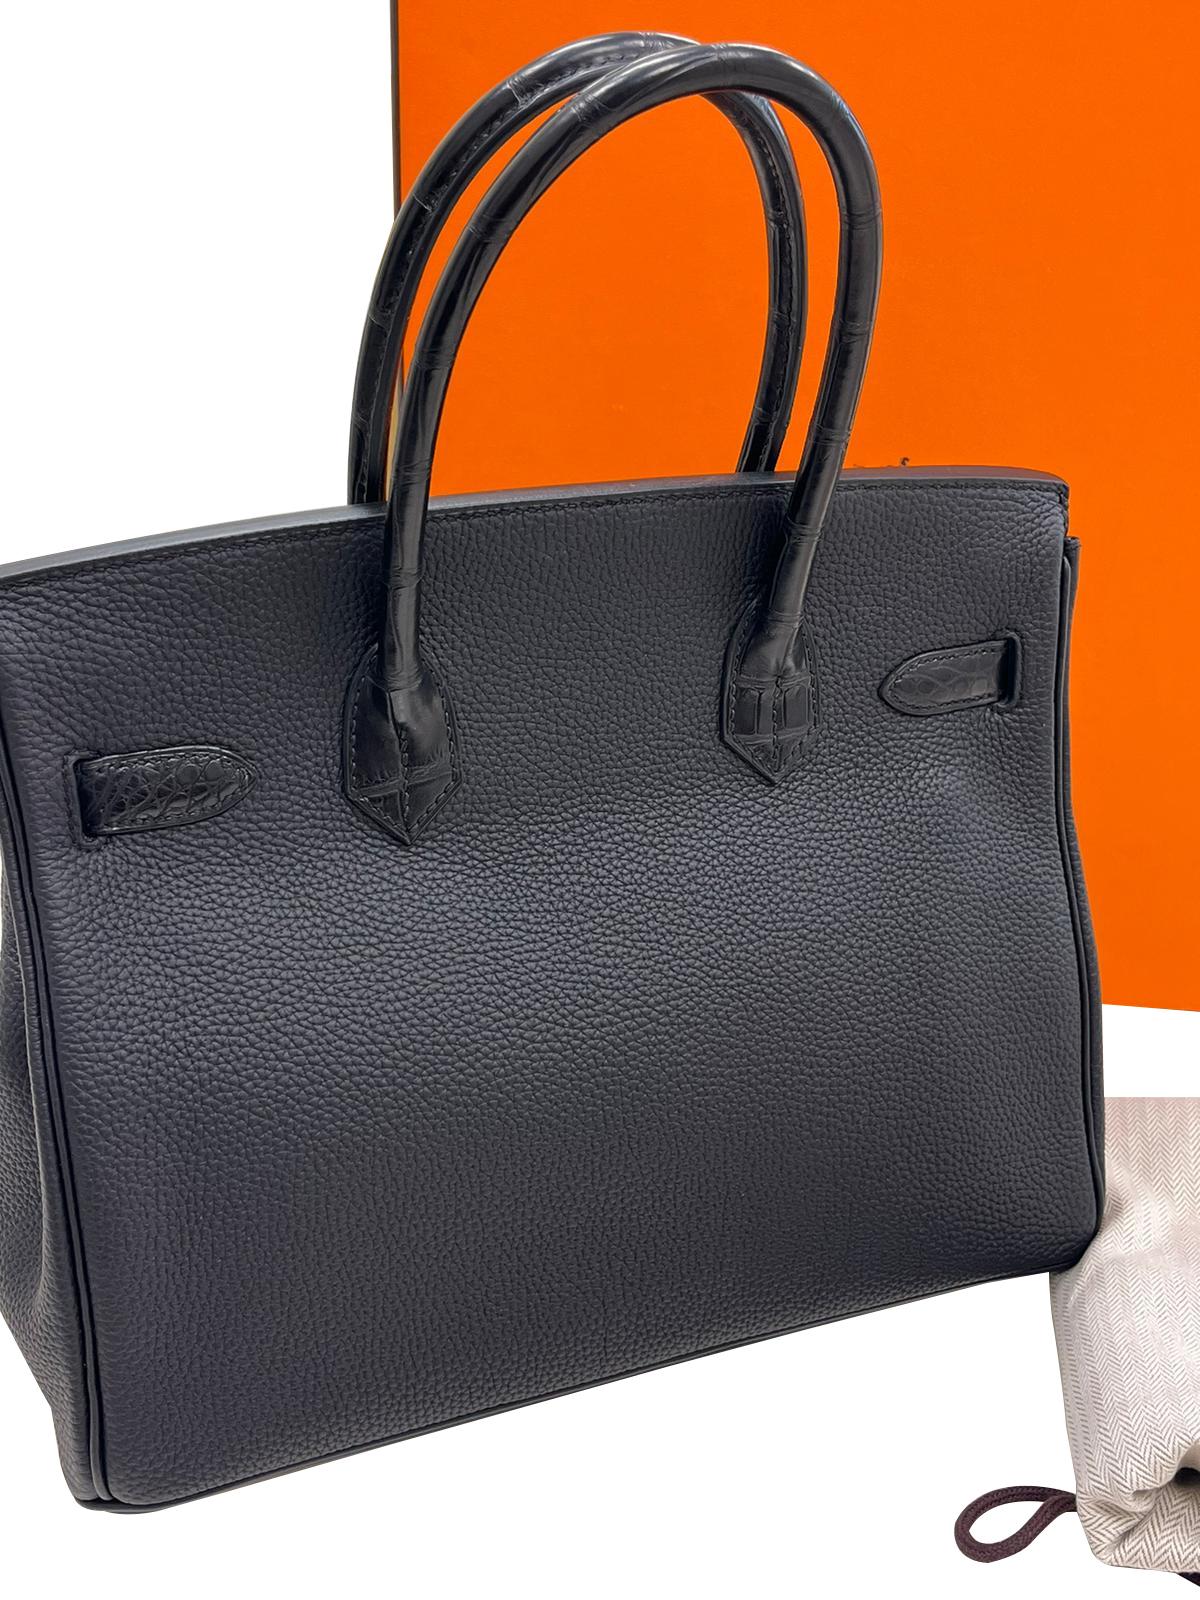 Hermès Birkin 30 Black Matte Alligator and Togo Touch Rose Gold Hardware For Sale 14